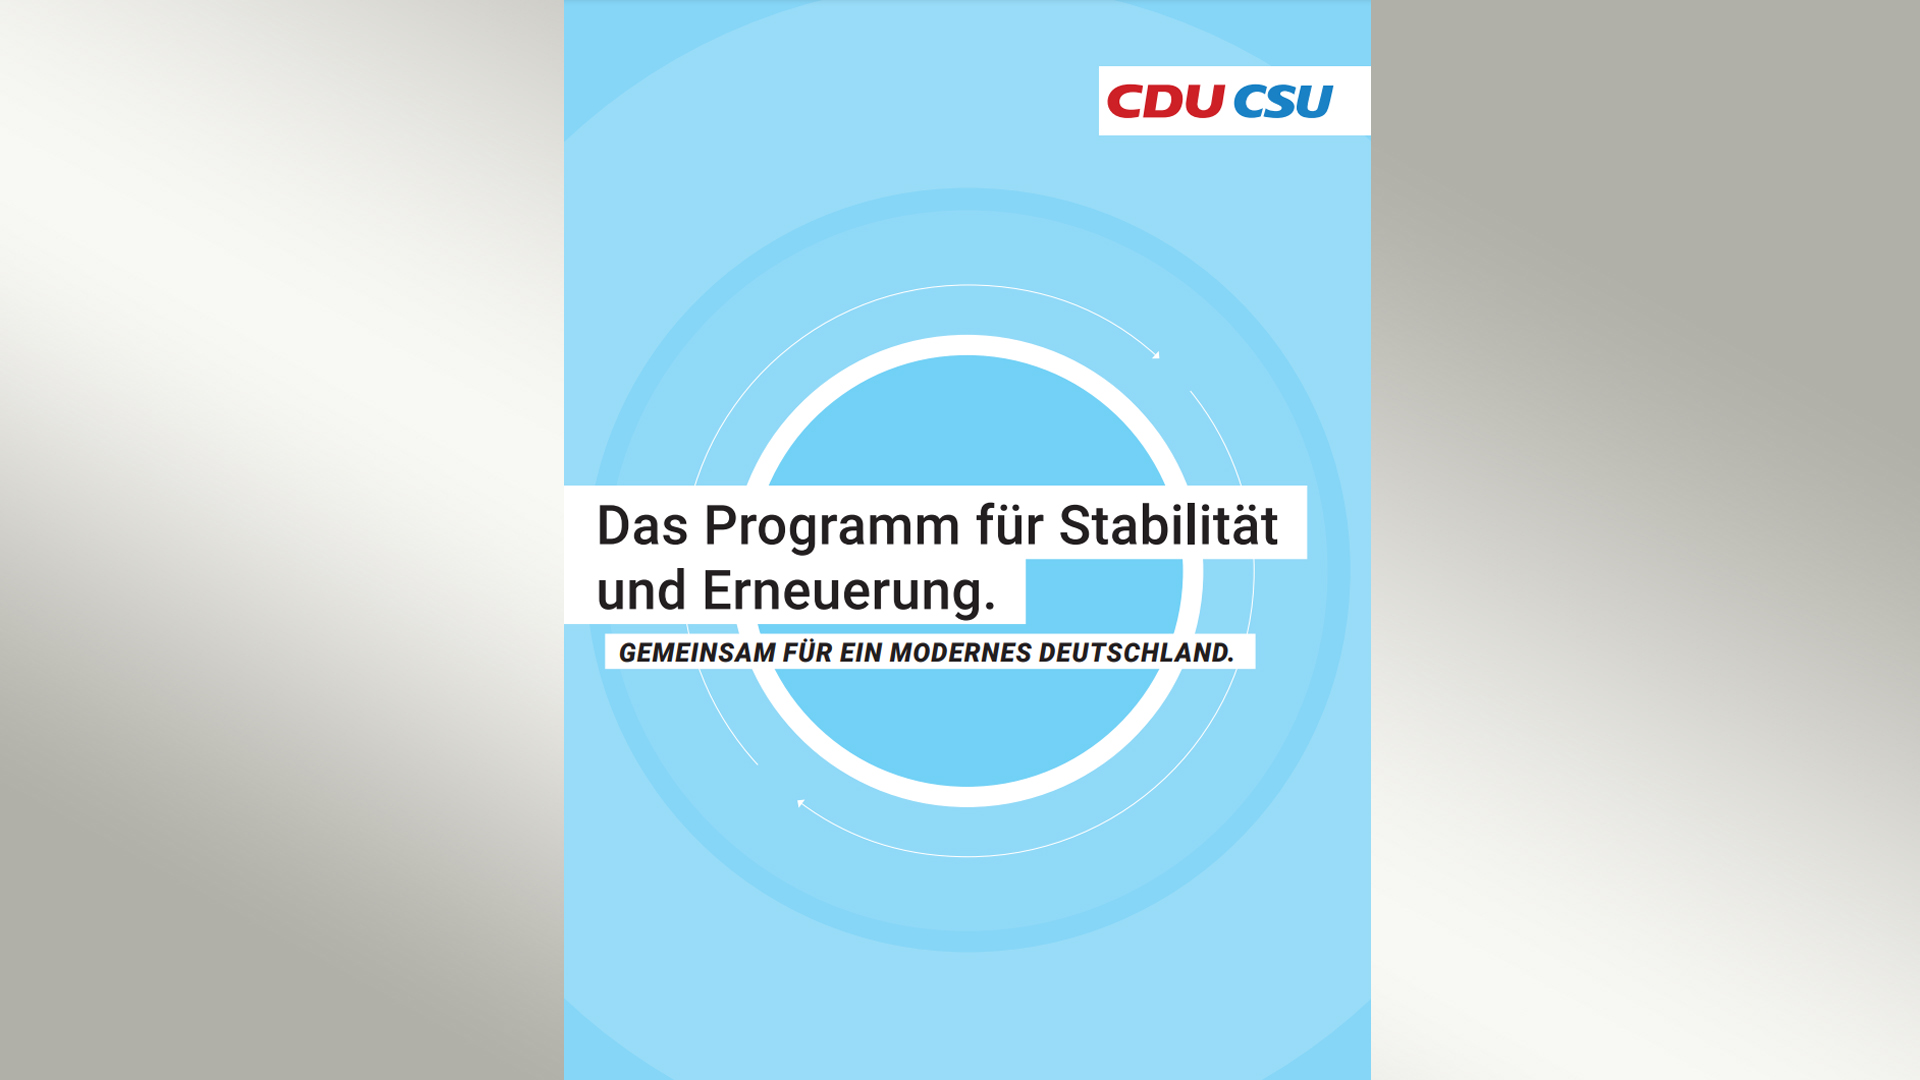 Titel Wahlprogramm von CDU/CSU